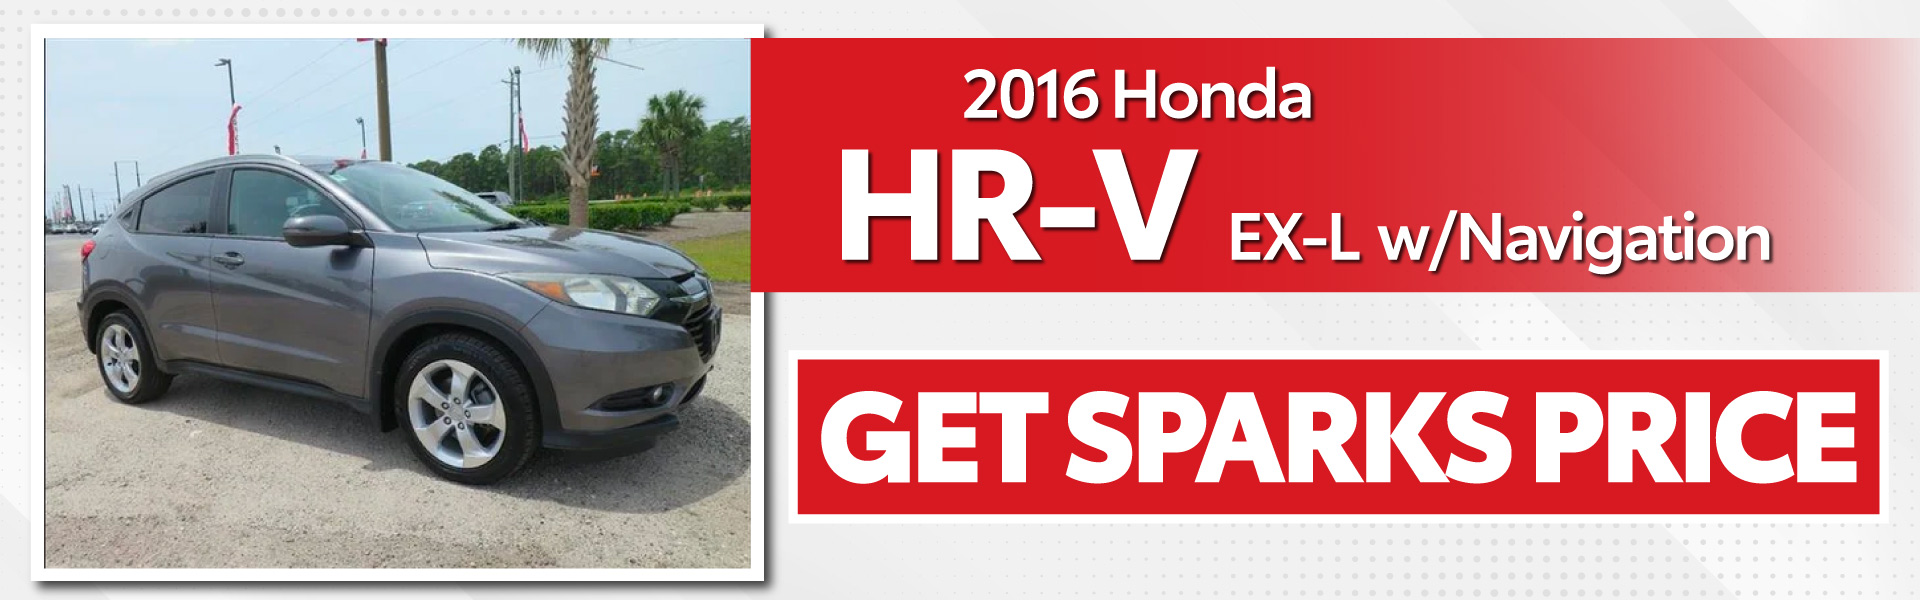 2016 Honda HR-V EX-L with Navigation - Get Sparks Price